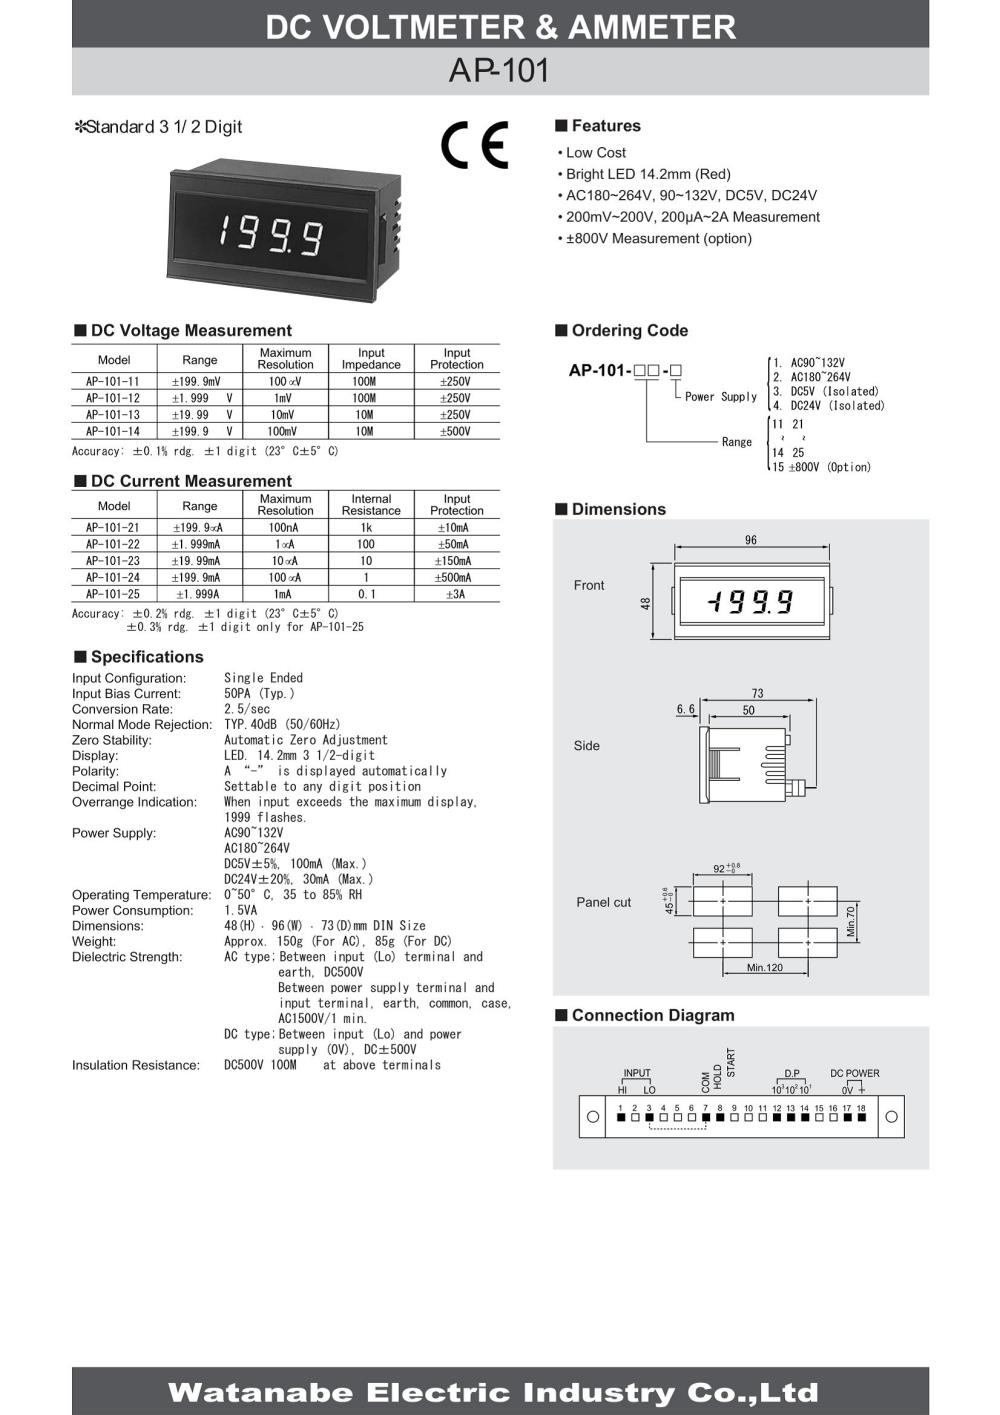 WATANABE Digital Panel Meter AP-101-13 Series